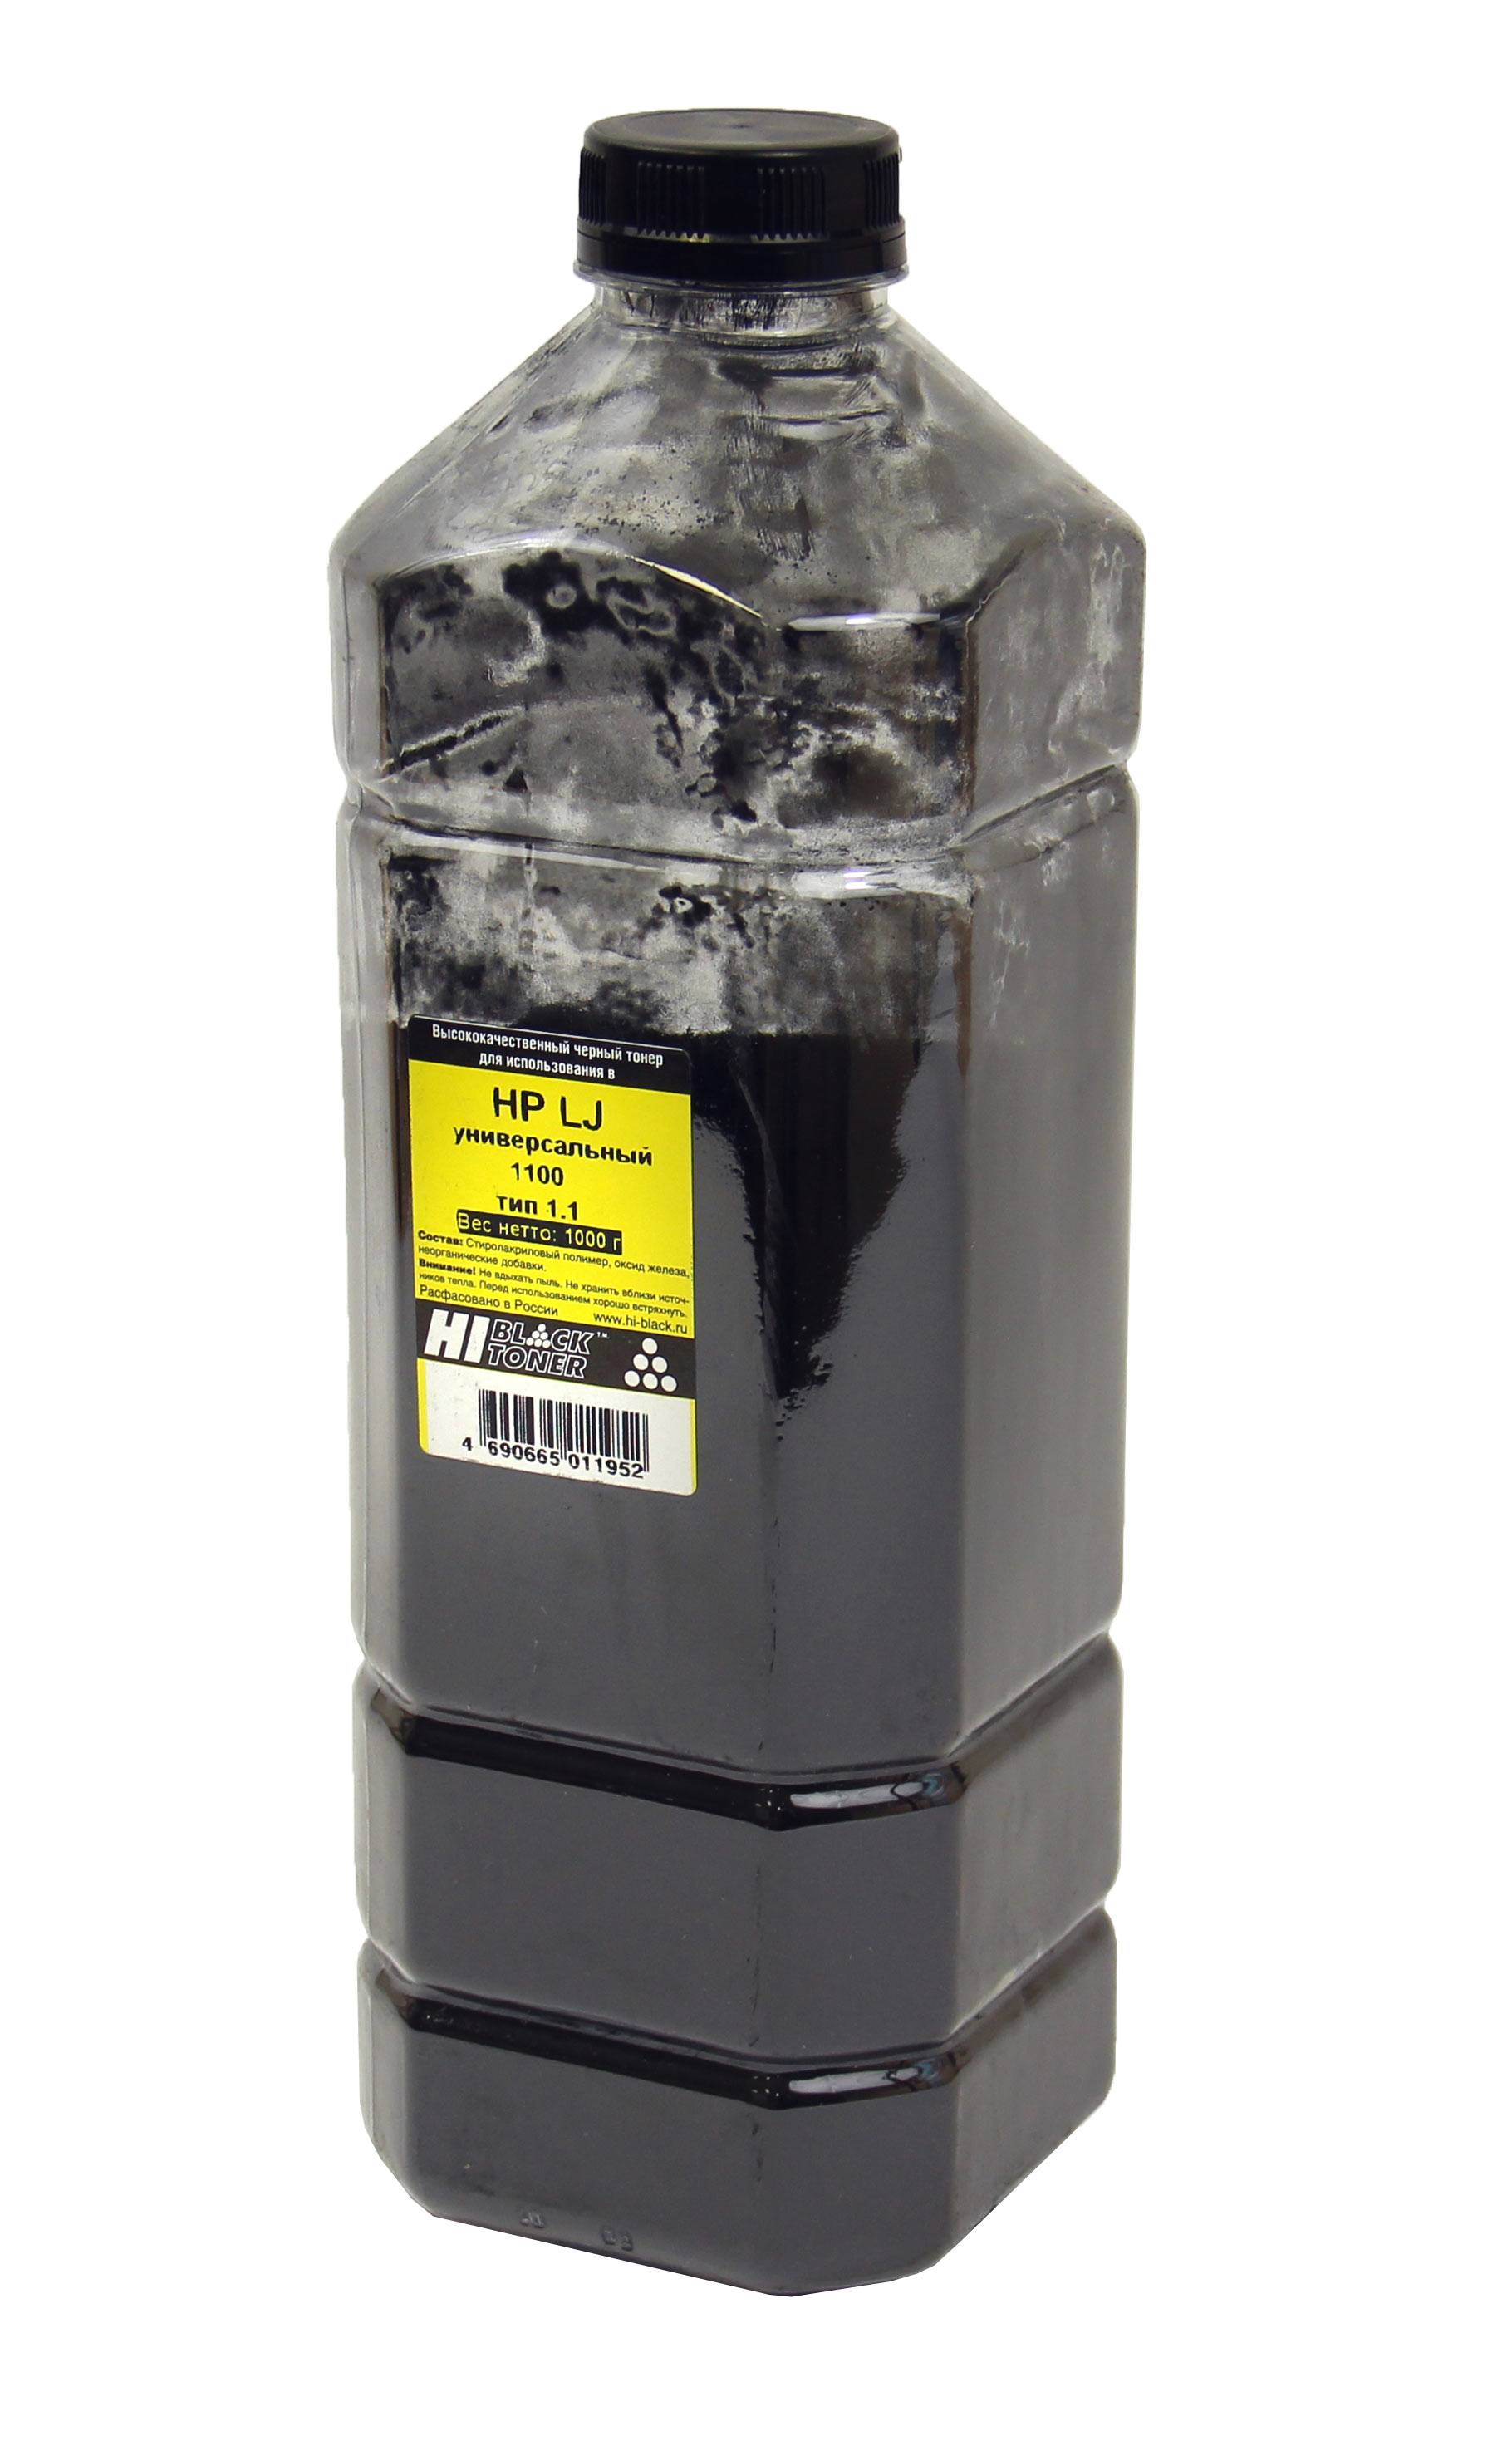 Тонер Hi-Black Универсальный для HP LJ 1100, Тип 1.1, Bk, 1 кг, канистра